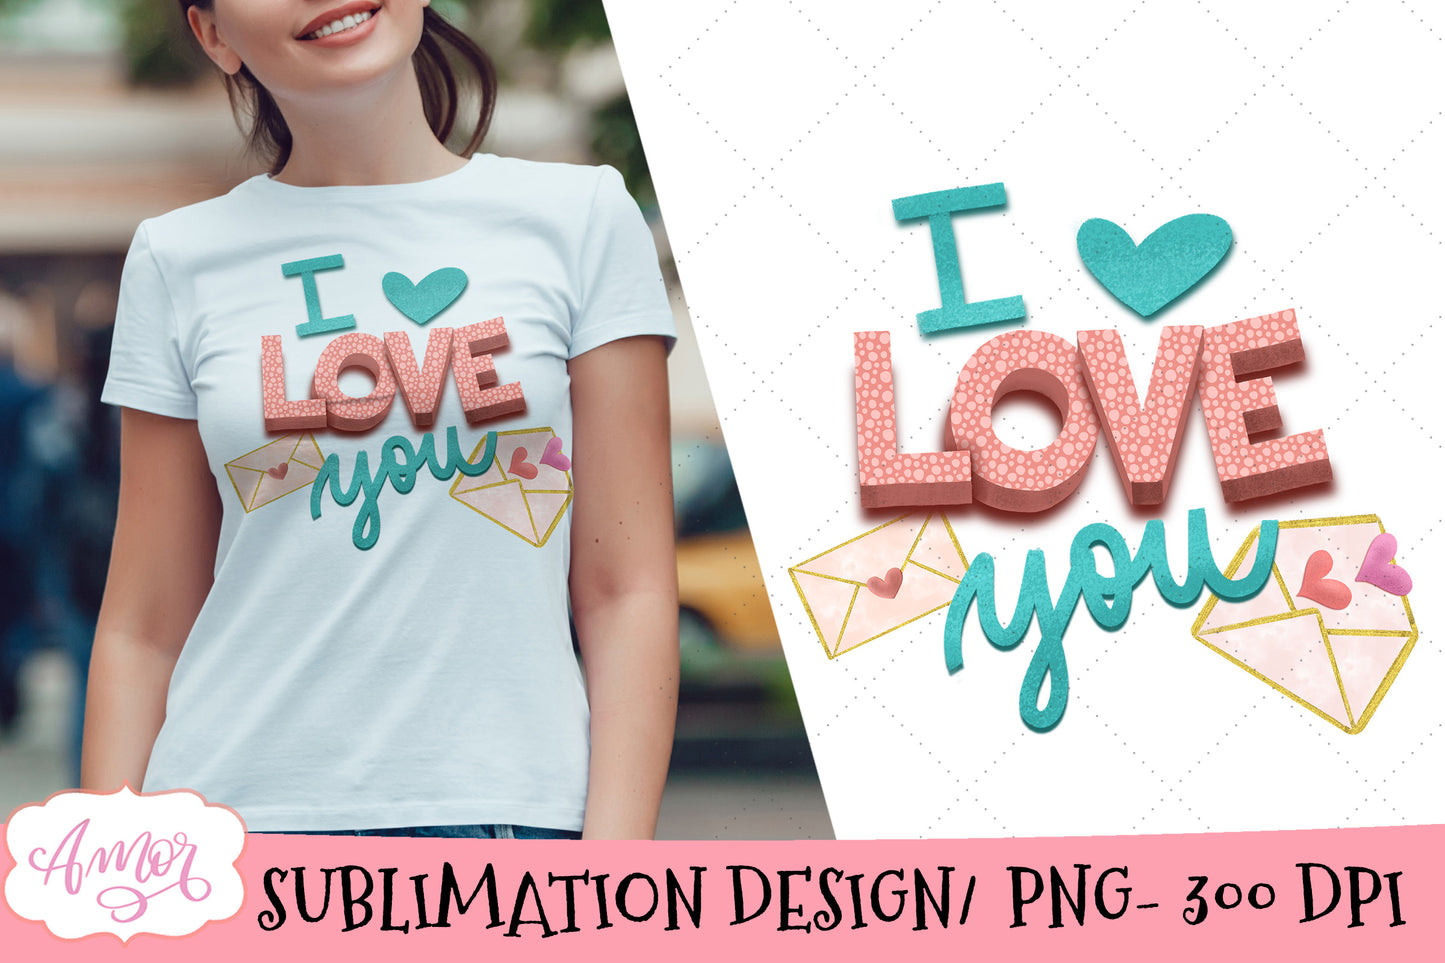 I Love You PNG design for sublimation